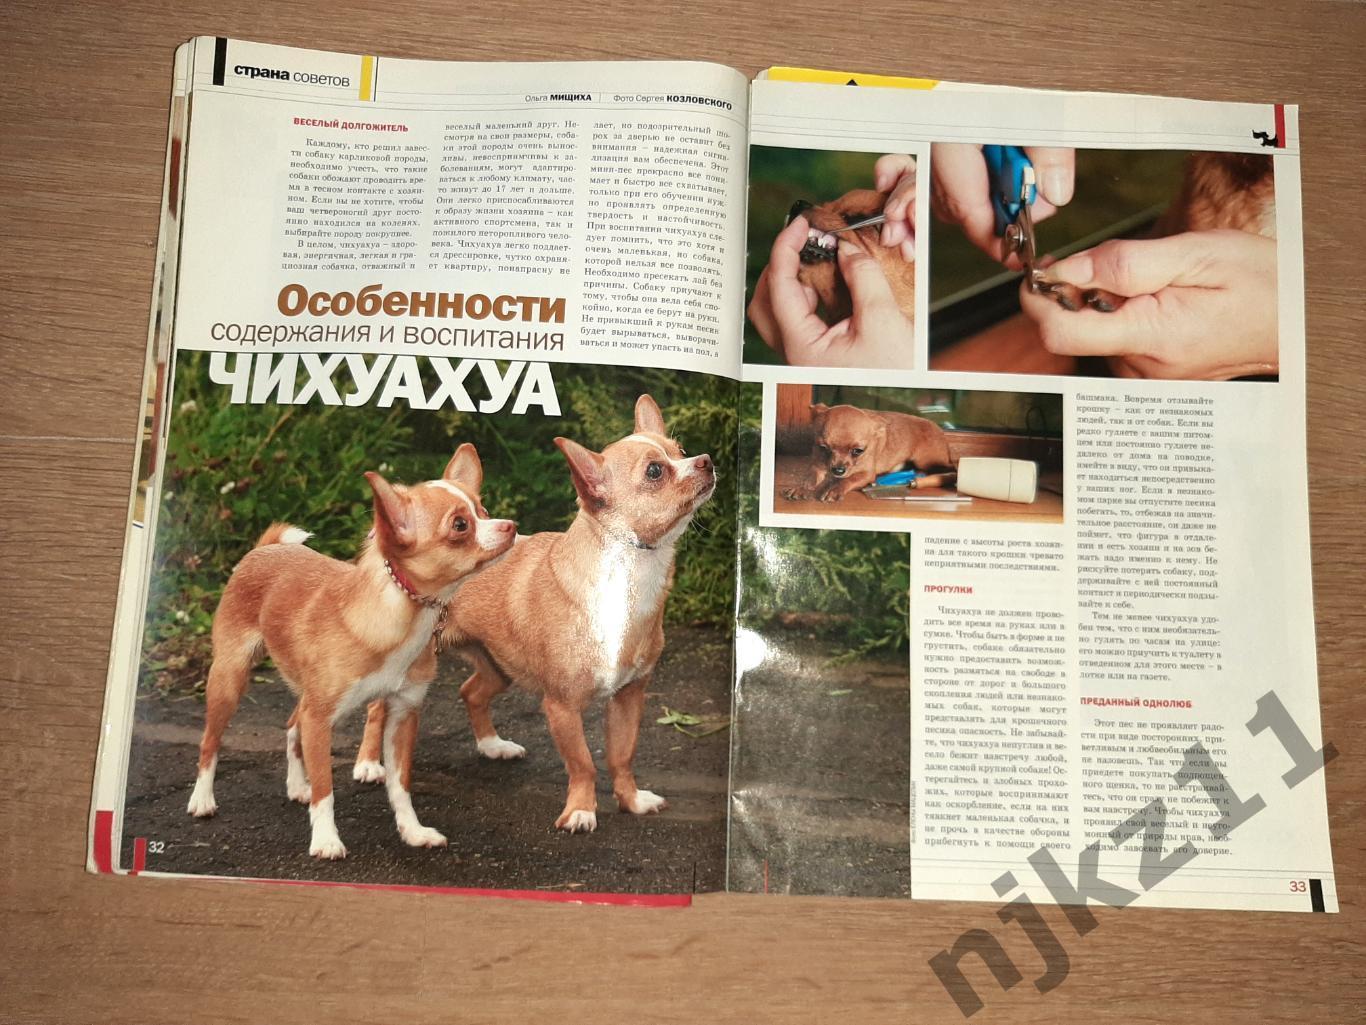 Друг Собак 3 выпуска за 2006г группа Рондо, заметки Дмитрия Крылова, Чихуа-хуа, 7